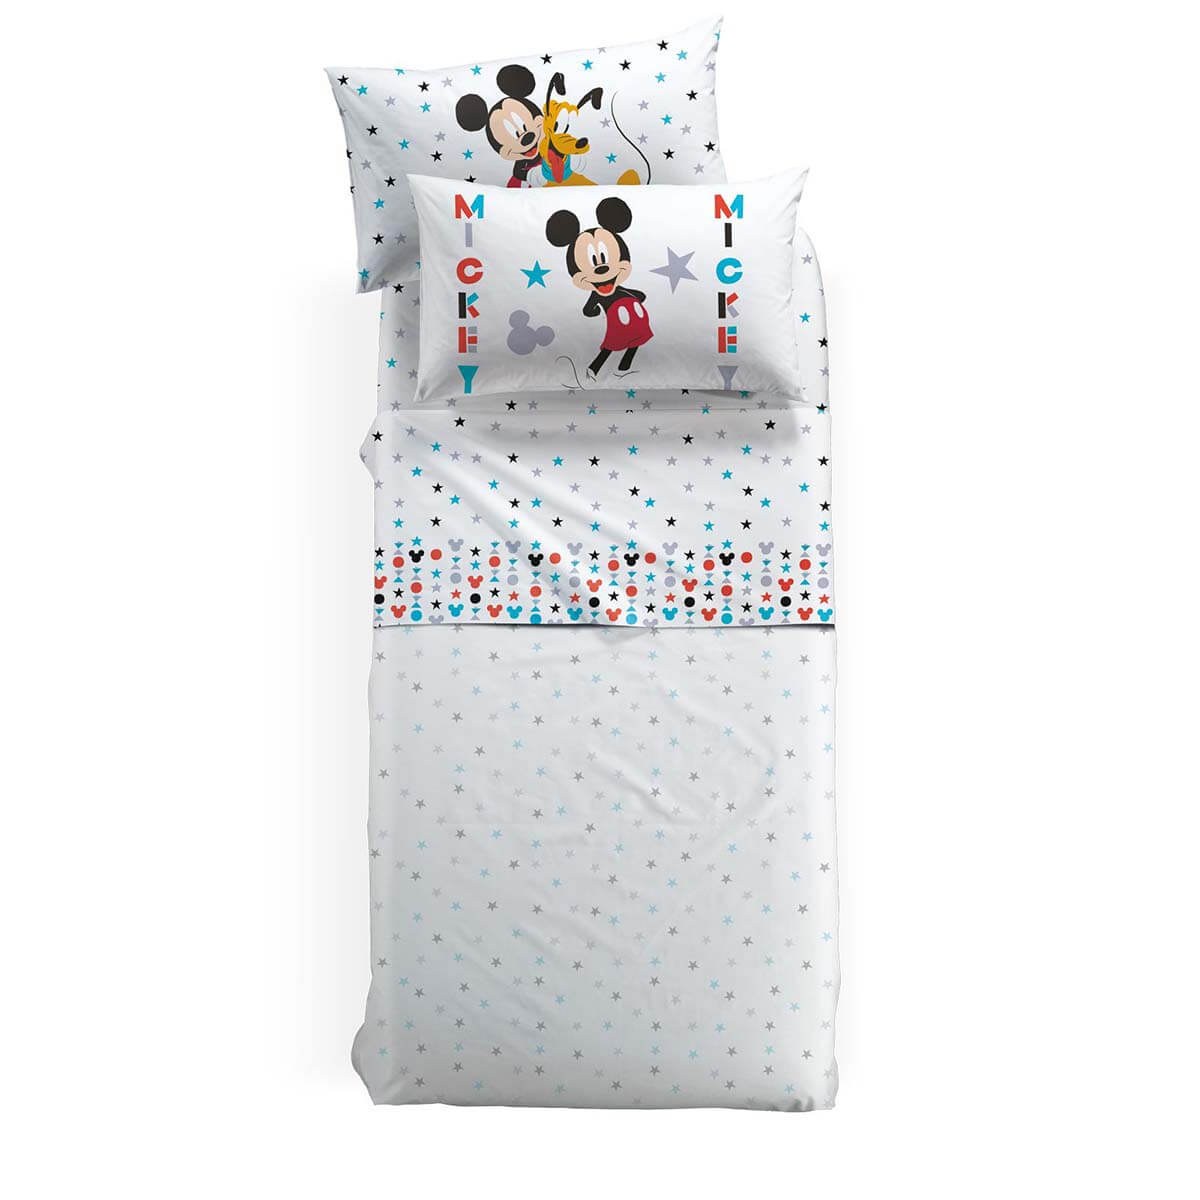 Completo lenzuola bambino Mickey Stelle con Topolino in puro cotone per letto singolo. Linea Caleffi Disney. Fondo bianco con topolino e stelle